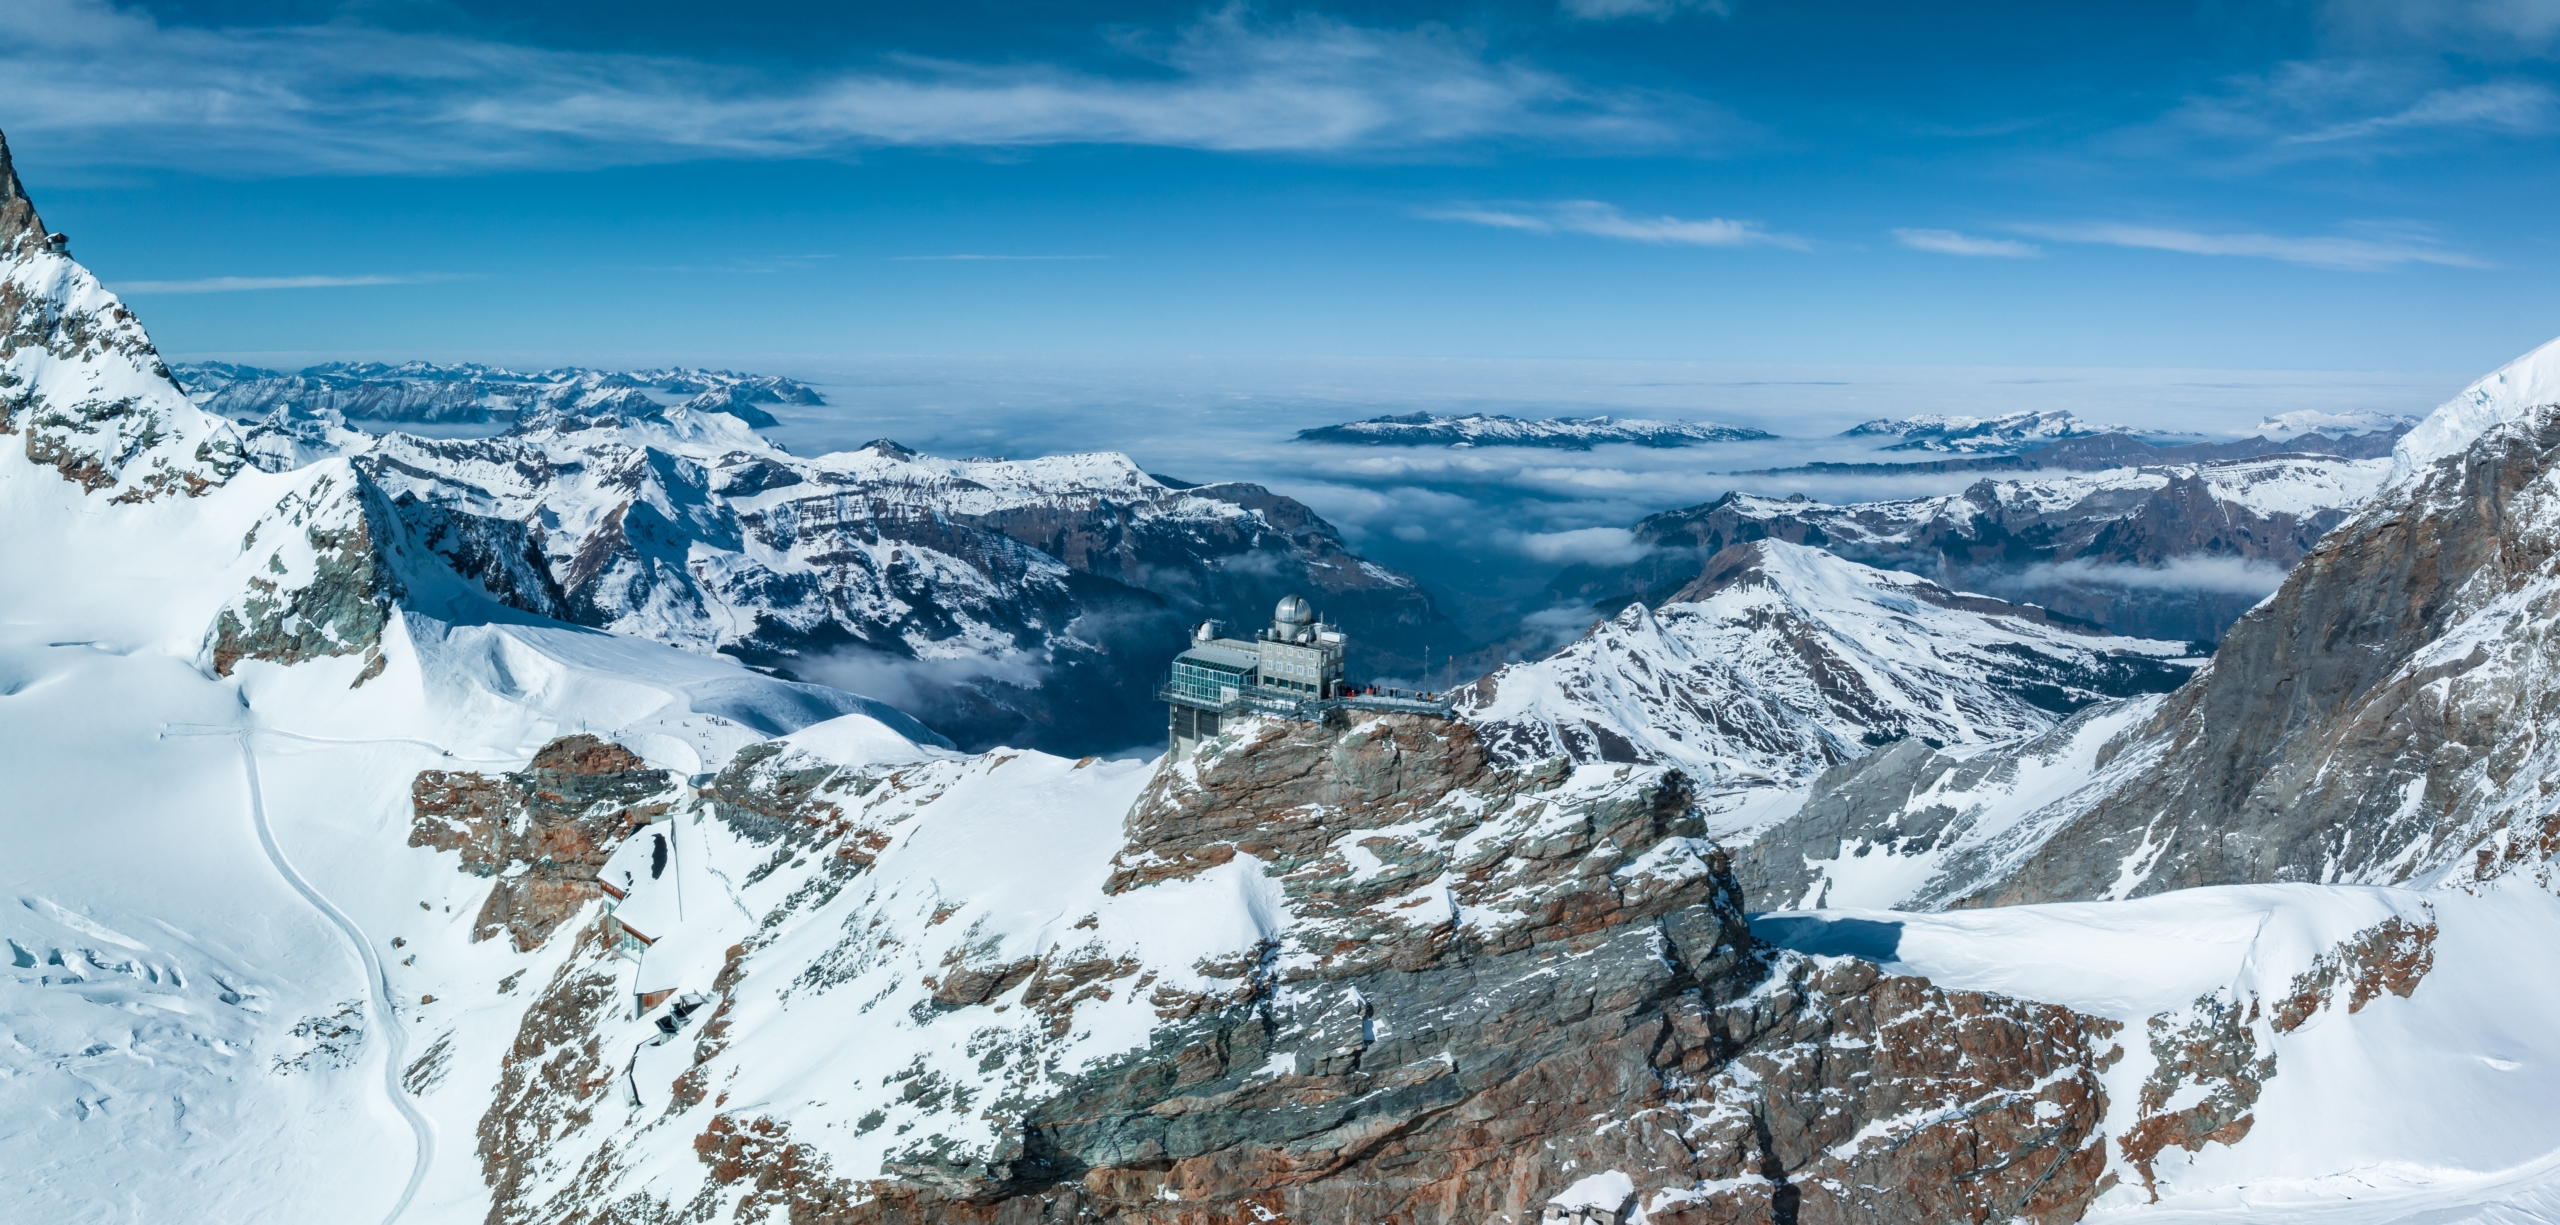 Ga Jungfraujoch được bao quanh bởi những ngọn núi. (Ảnh: Shutterstock)